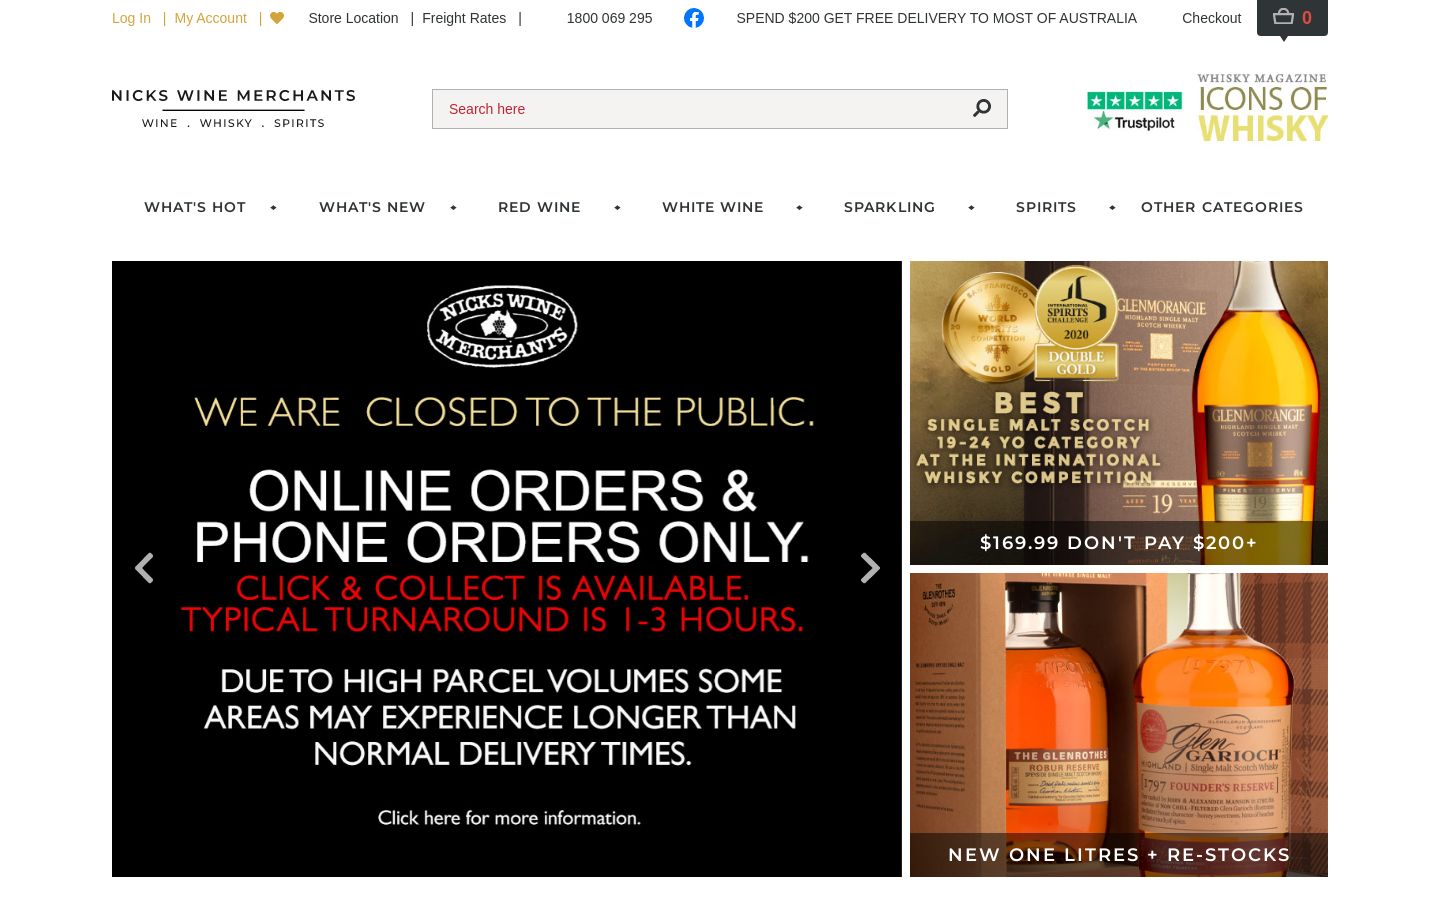 Nicks Wine Merchants website shown on desktop